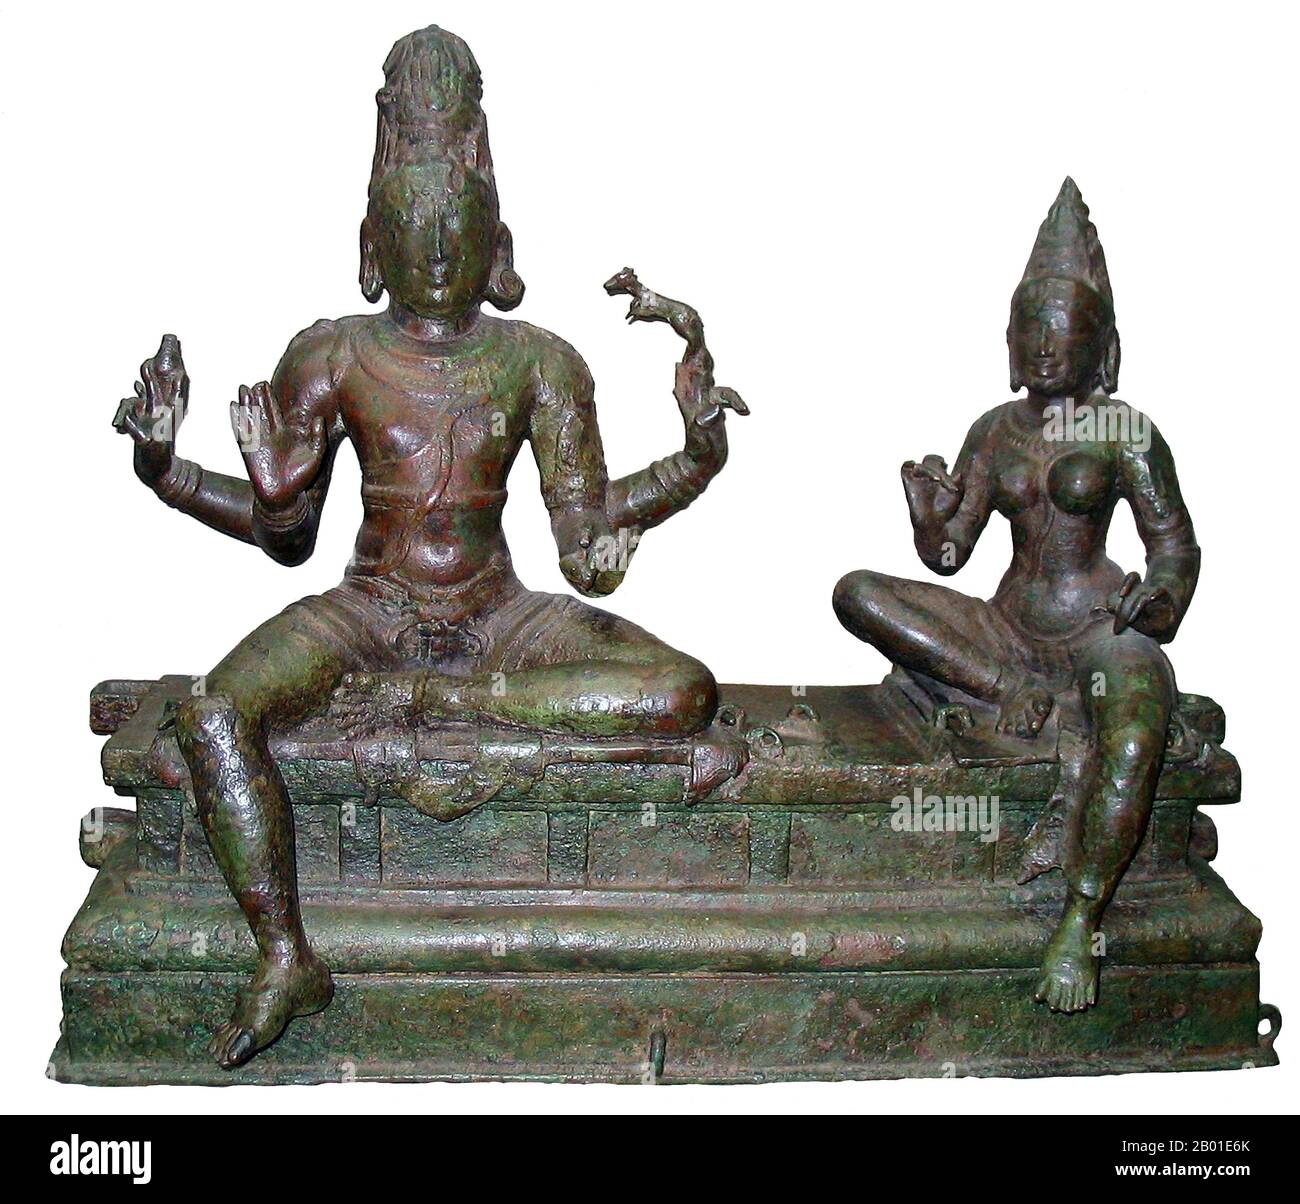 Indien: Somaskanda (Shiva und seine Gemahlin Uma), Südindien, Chola-Dynastie, 12. Jahrhundert. Foto von Quadell (CC BY-SA 3,0 Lizenz). Shiva (Sanskrit: शिव Śiva, was "die Glückliche" bedeutet) ist eine große hinduistische Gottheit und ist der zerstörergott oder Transformator unter den Trimurti, der Hindu-Dreifaltigkeit der wichtigsten Aspekte des Göttlichen. In der Shaiva-Tradition des Hinduismus gilt Shiva als oberster Gott. In der Smarta-Tradition gilt er als eine der fünf primären Formen Gottes. Anhänger des Hinduismus, die ihre Verehrung auf Shiva richten, werden Shaiviten oder Shaivas (Sanskrit śaiva) genannt. Stockfoto